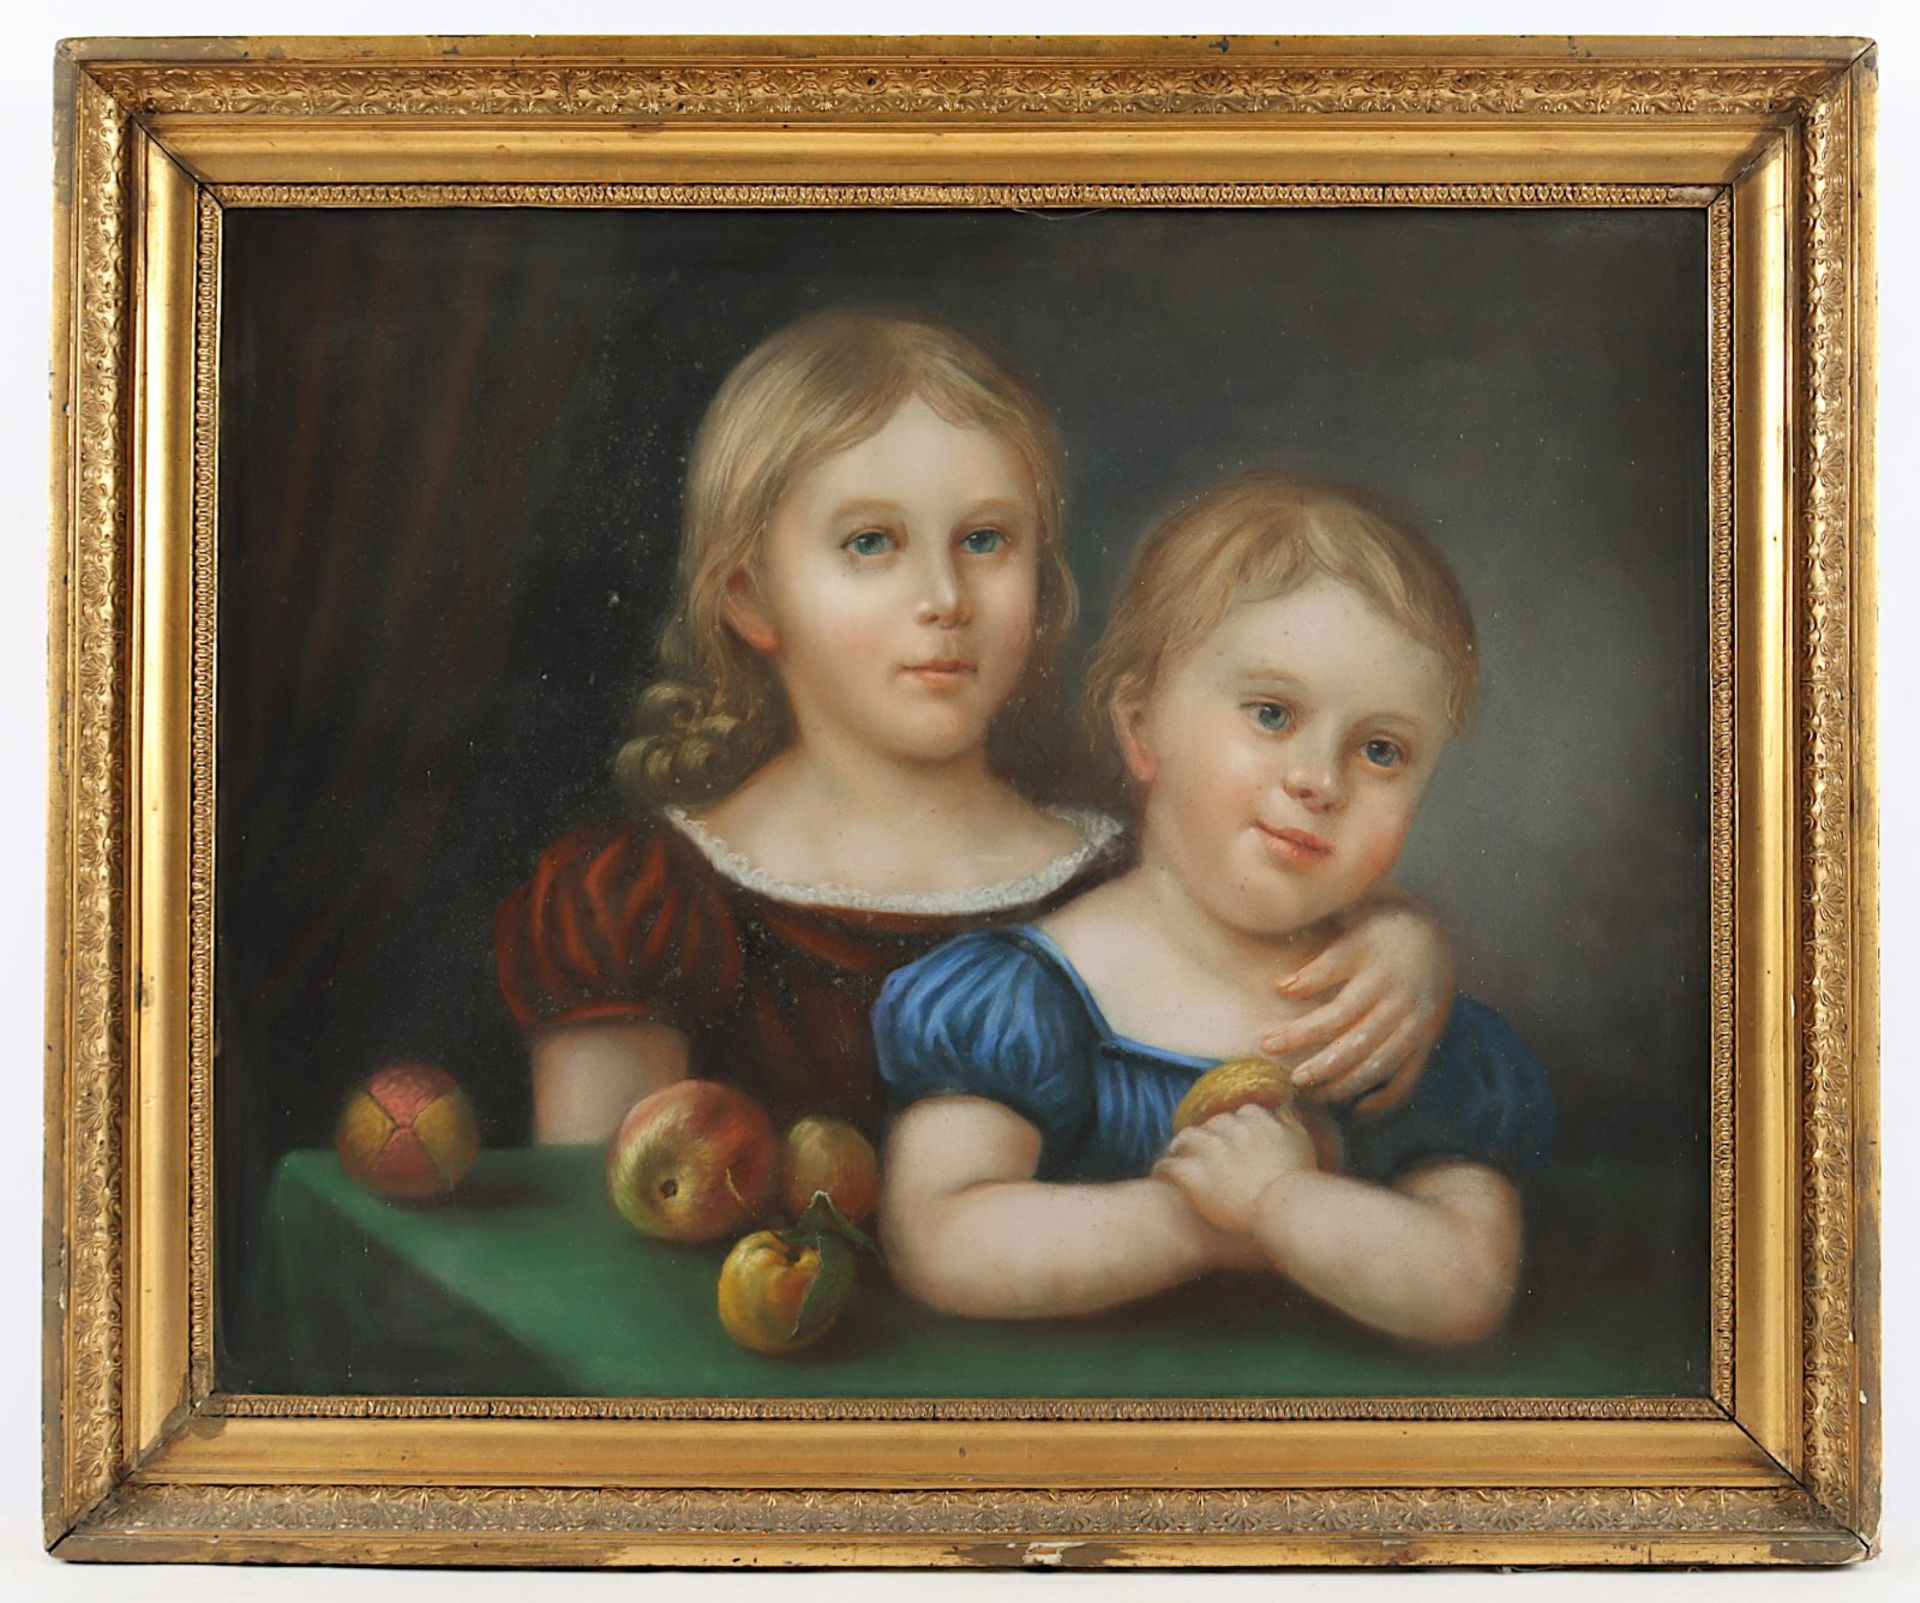 AQUARELLIST DES 19.JH., "Portrait eines Geschwisterpaares", R. 